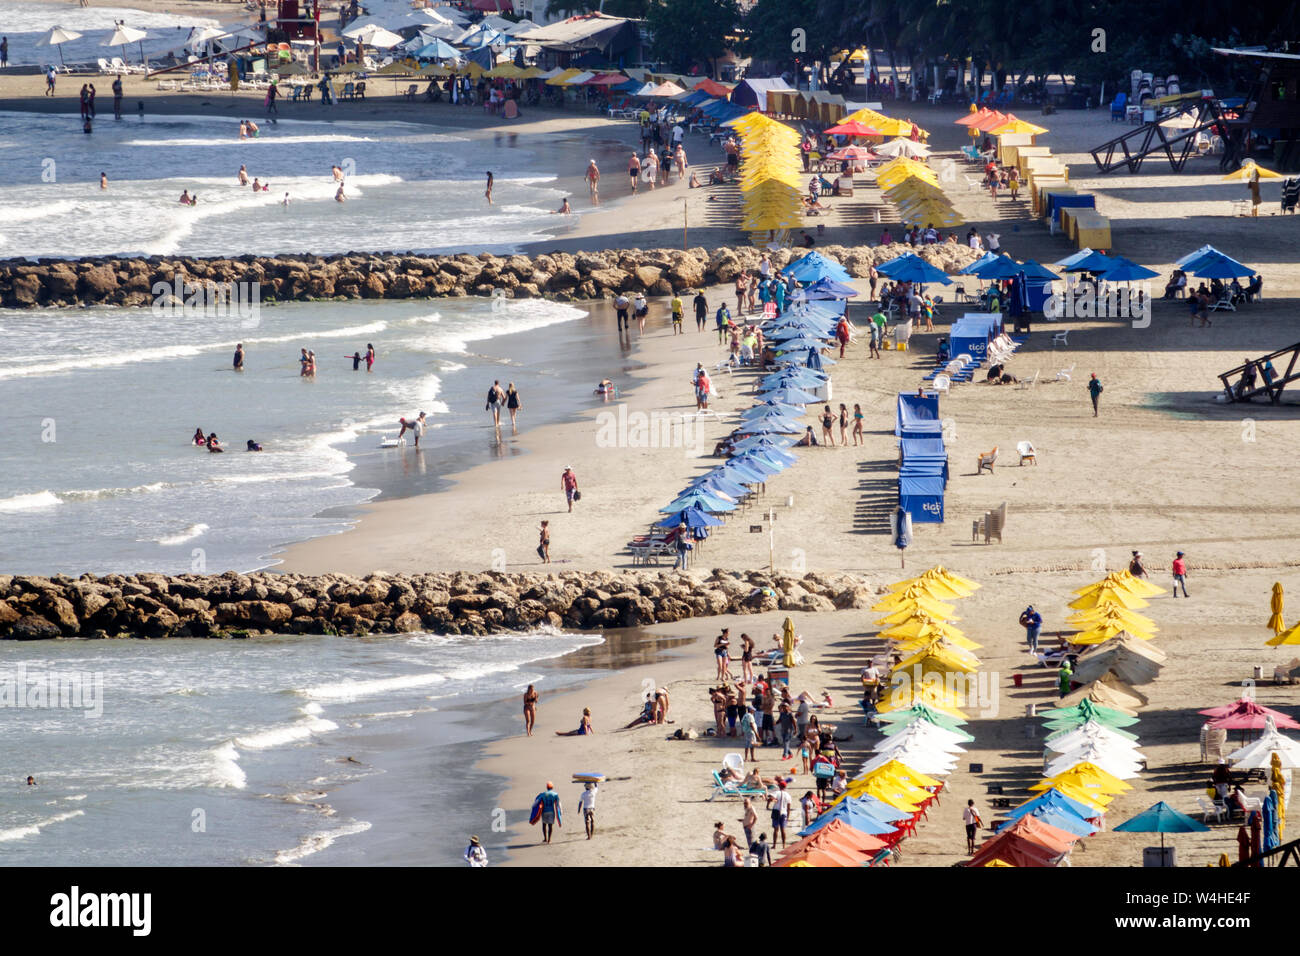 Colombia Cartagena Bocagrande Caraibi Mare spiaggia pubblica sabbia ombrelloni Autonoleggio Ispanico Ispanico Latino Latino Latino Ethnics immi Foto Stock